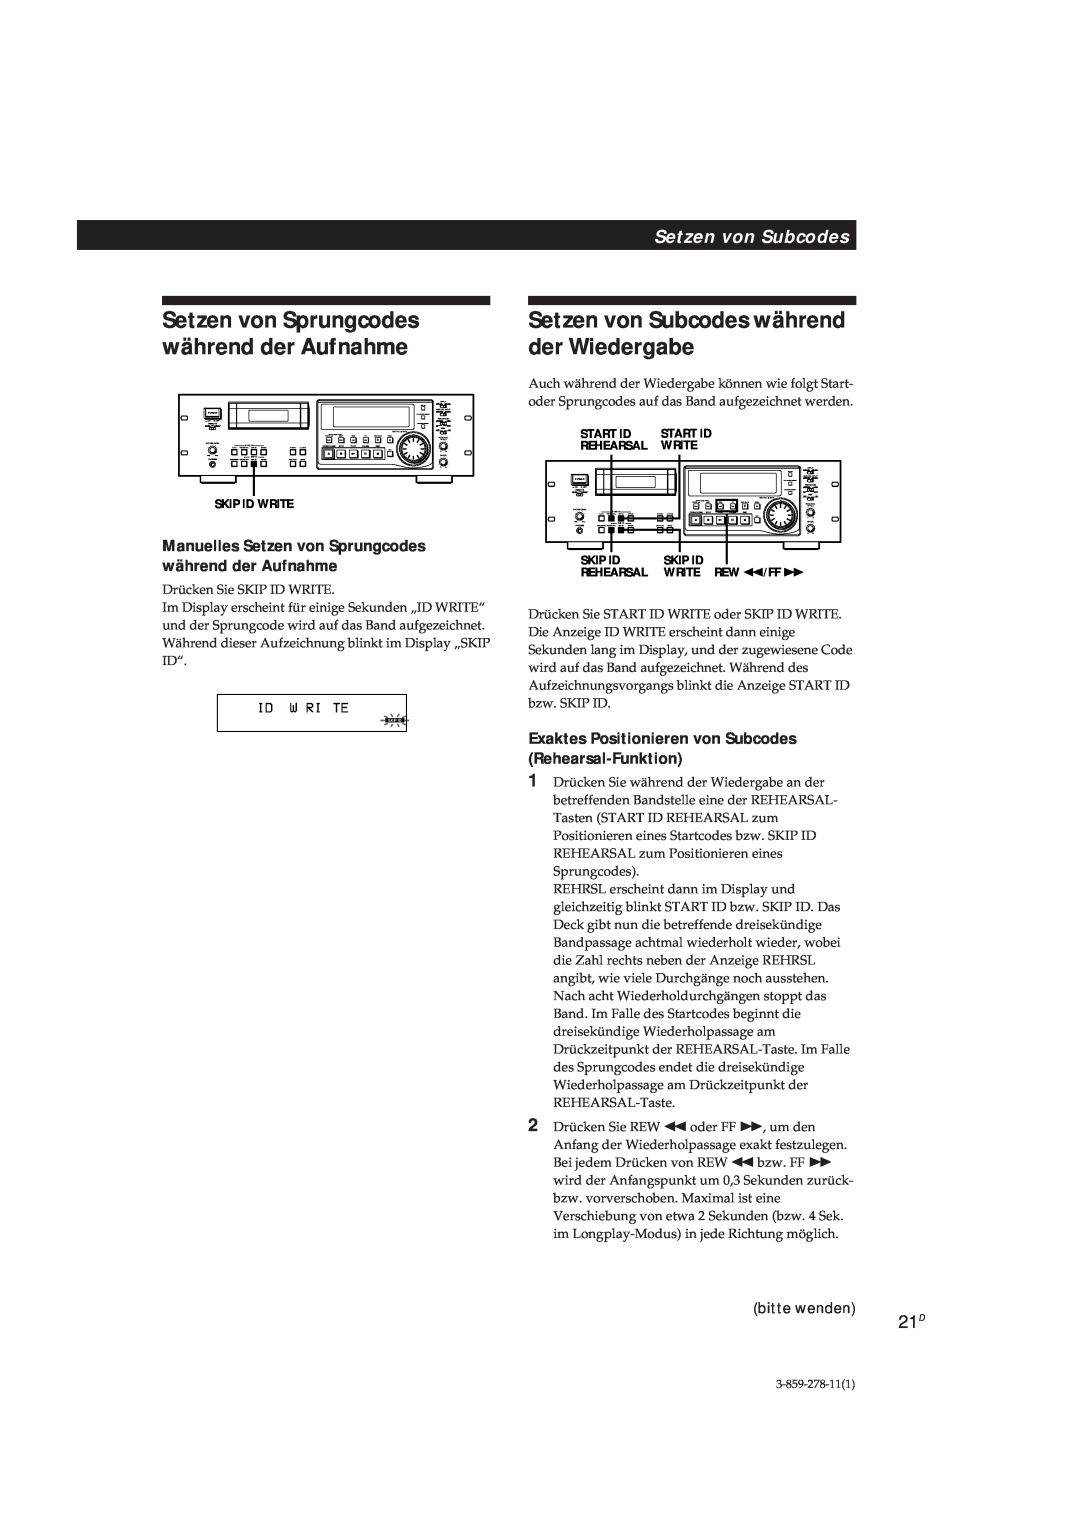 Sony PCM-R700 manual Setzen von Subcodes während der Wiedergabe, Setzen von Sprungcodes während der Aufnahme, bitte wenden 